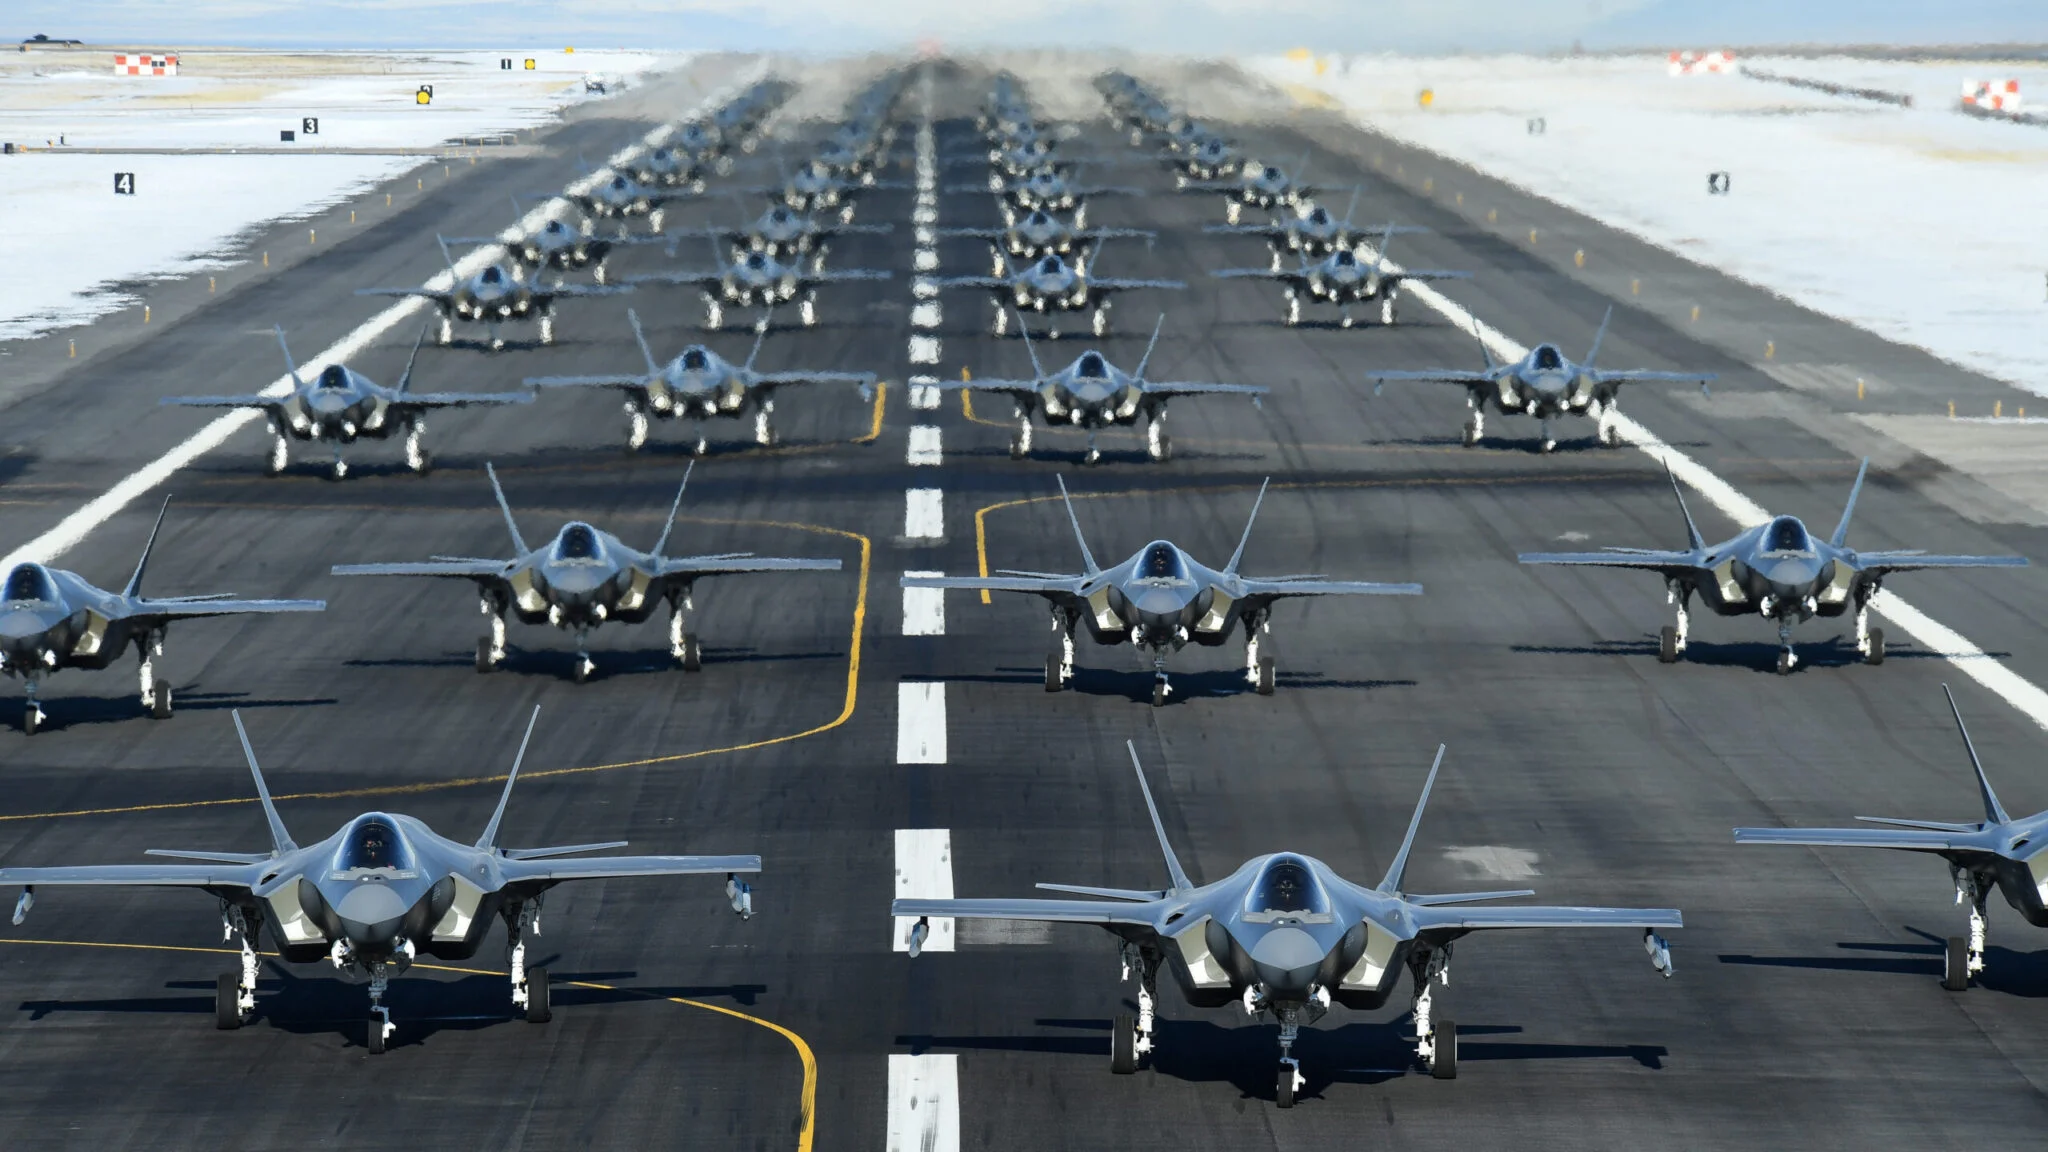 Det amerikanske luftvåben betaler i gennemsnit 82,5 millioner dollars for et F-35A-kampfly, mens F-35B og F-35C koster mere end 100 millioner dollars.